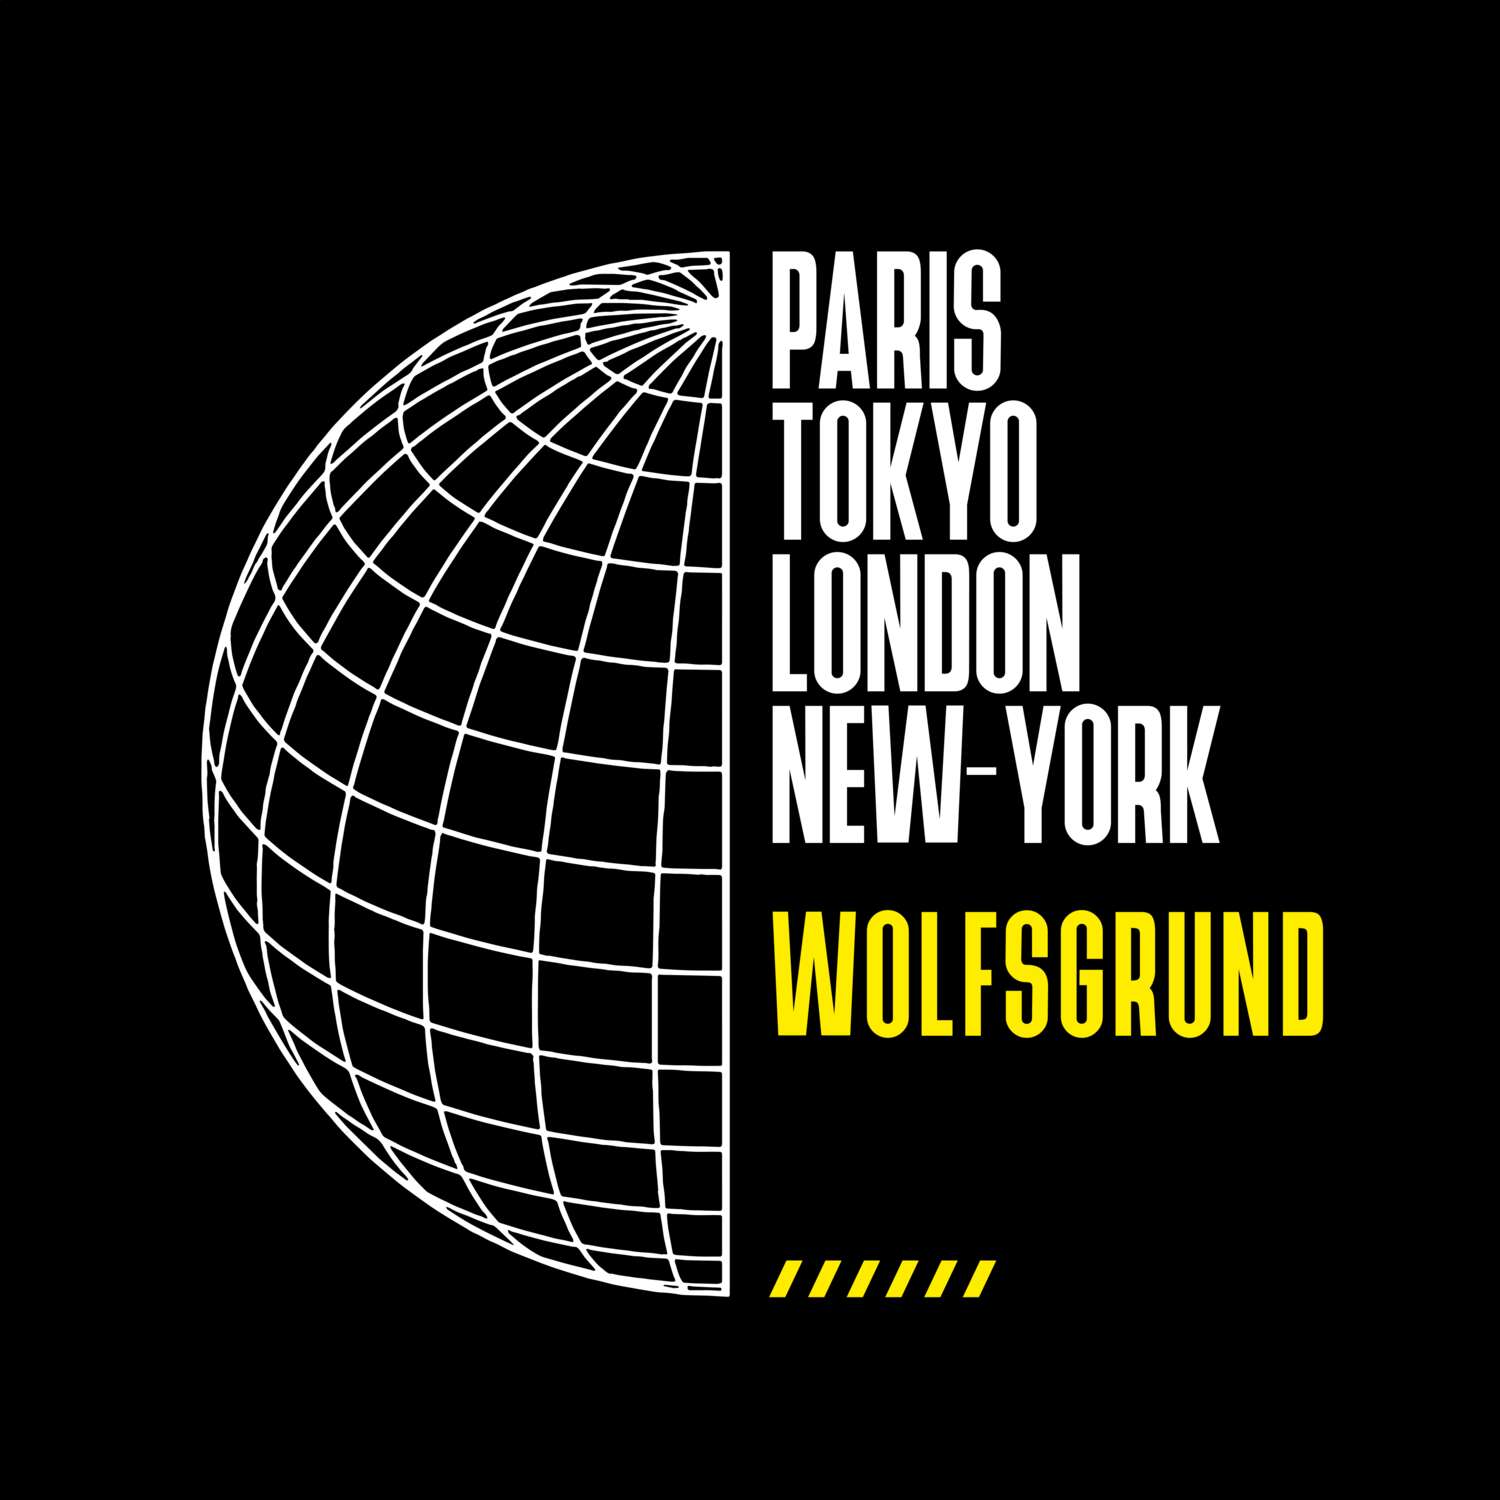 Wolfsgrund T-Shirt »Paris Tokyo London«